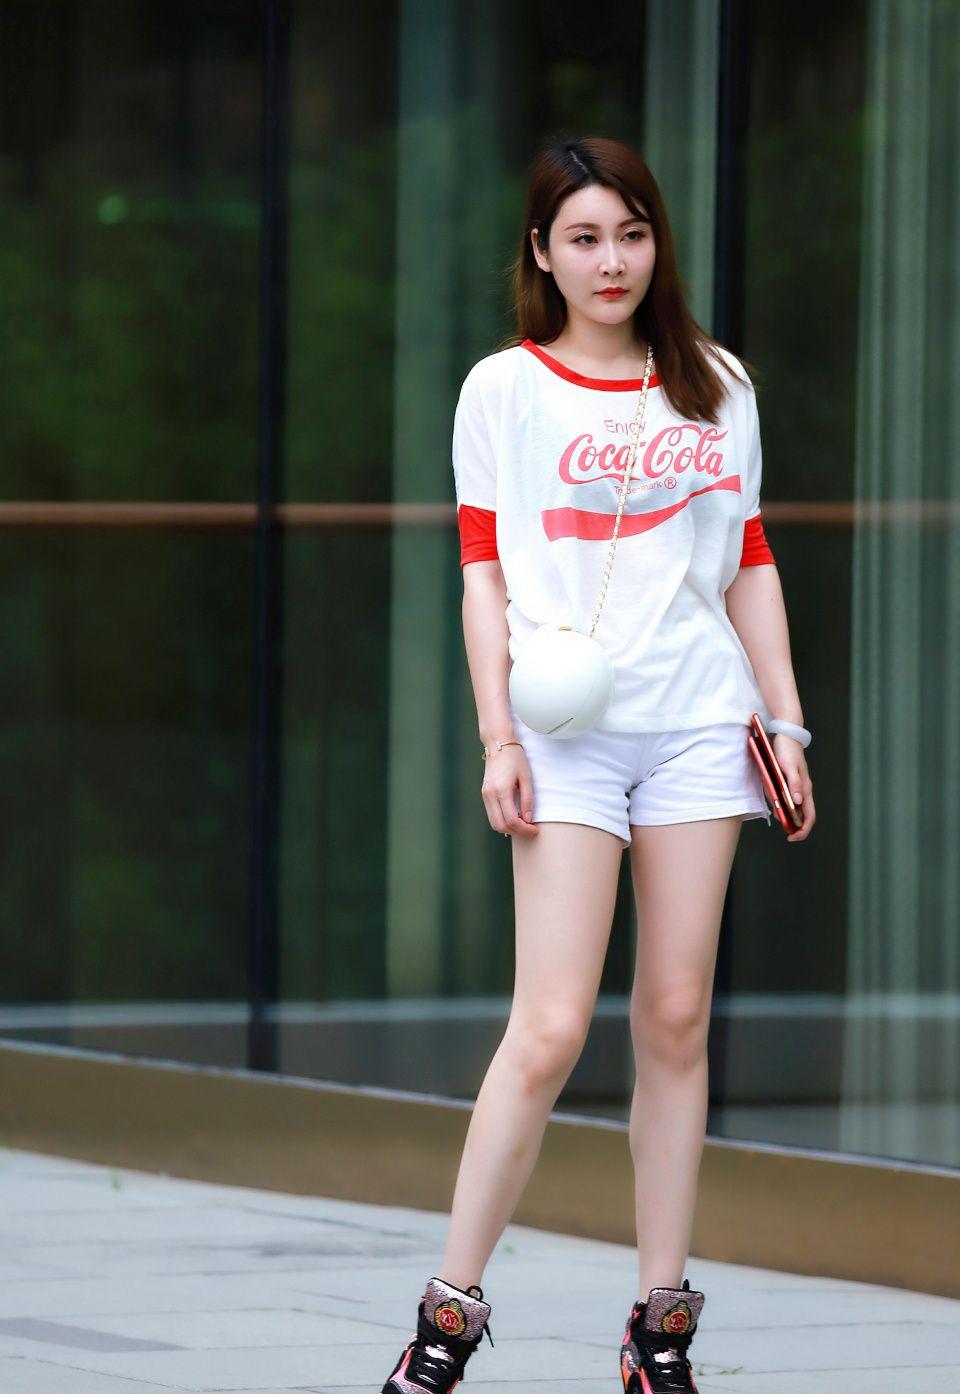 简单的白色短袖和短裤在夏天经常被看到,但是女孩的球囊真的是时尚的